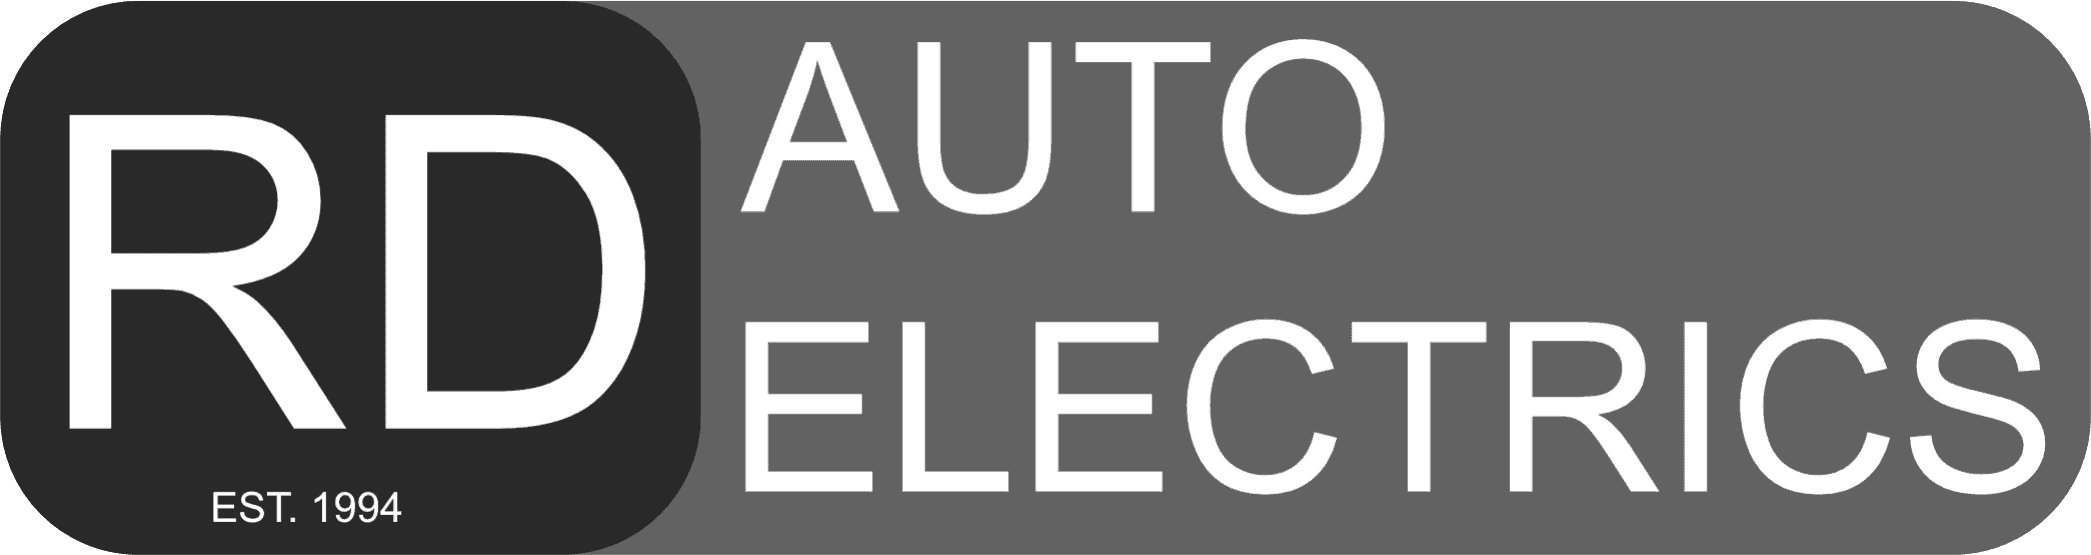 RD Auto Electrics Logo